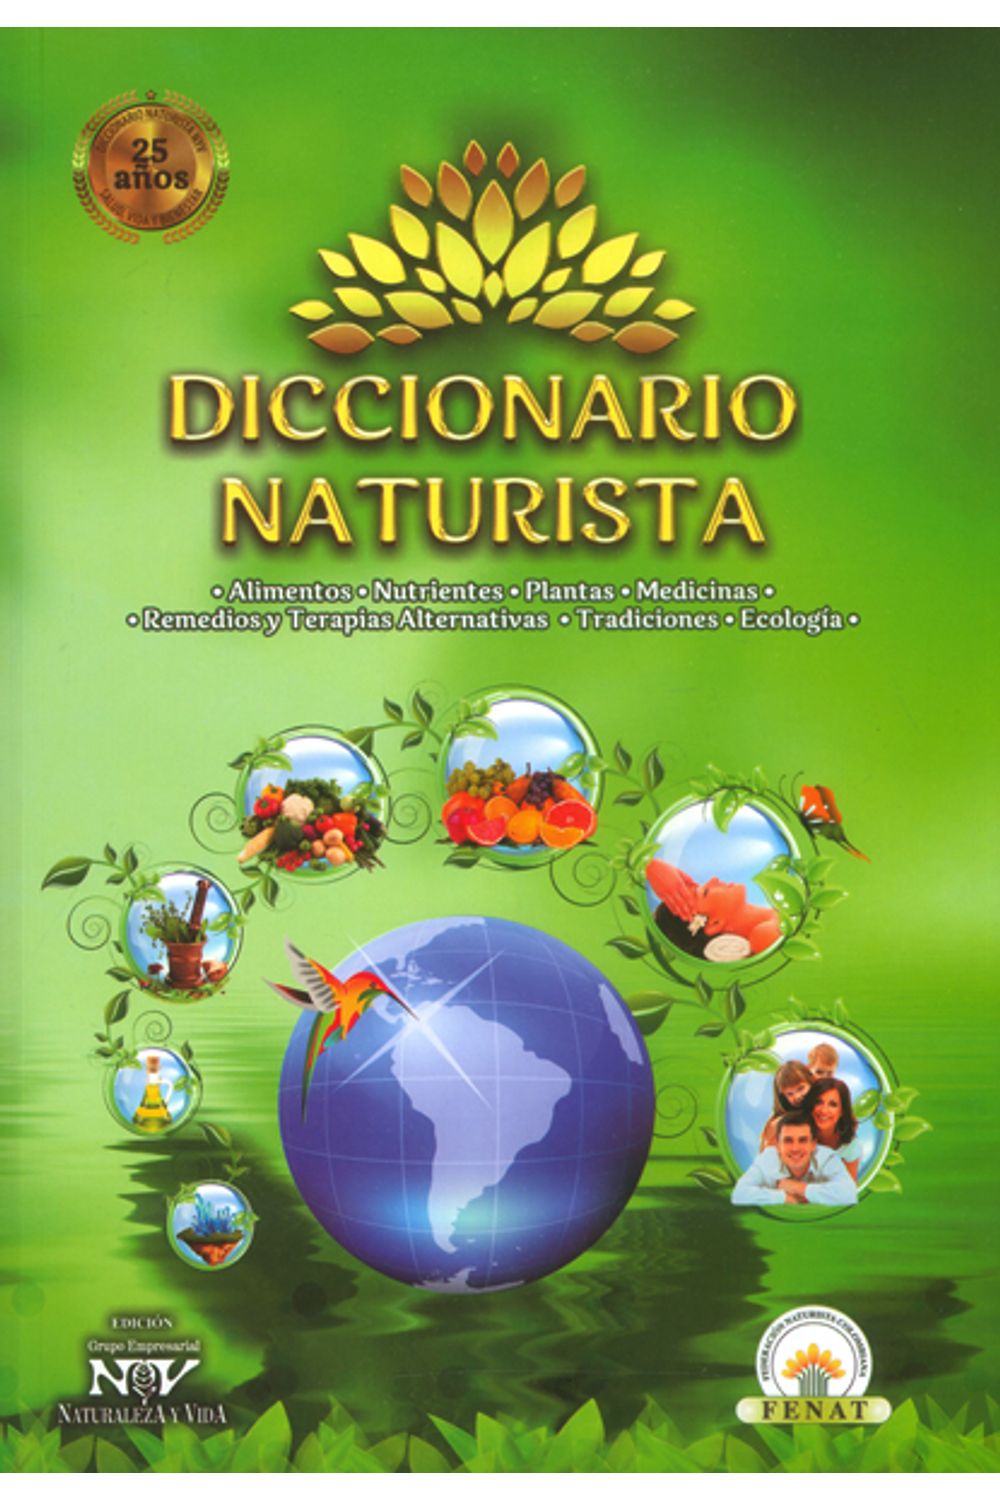 diccionario-naturista-9789585886100-hipe